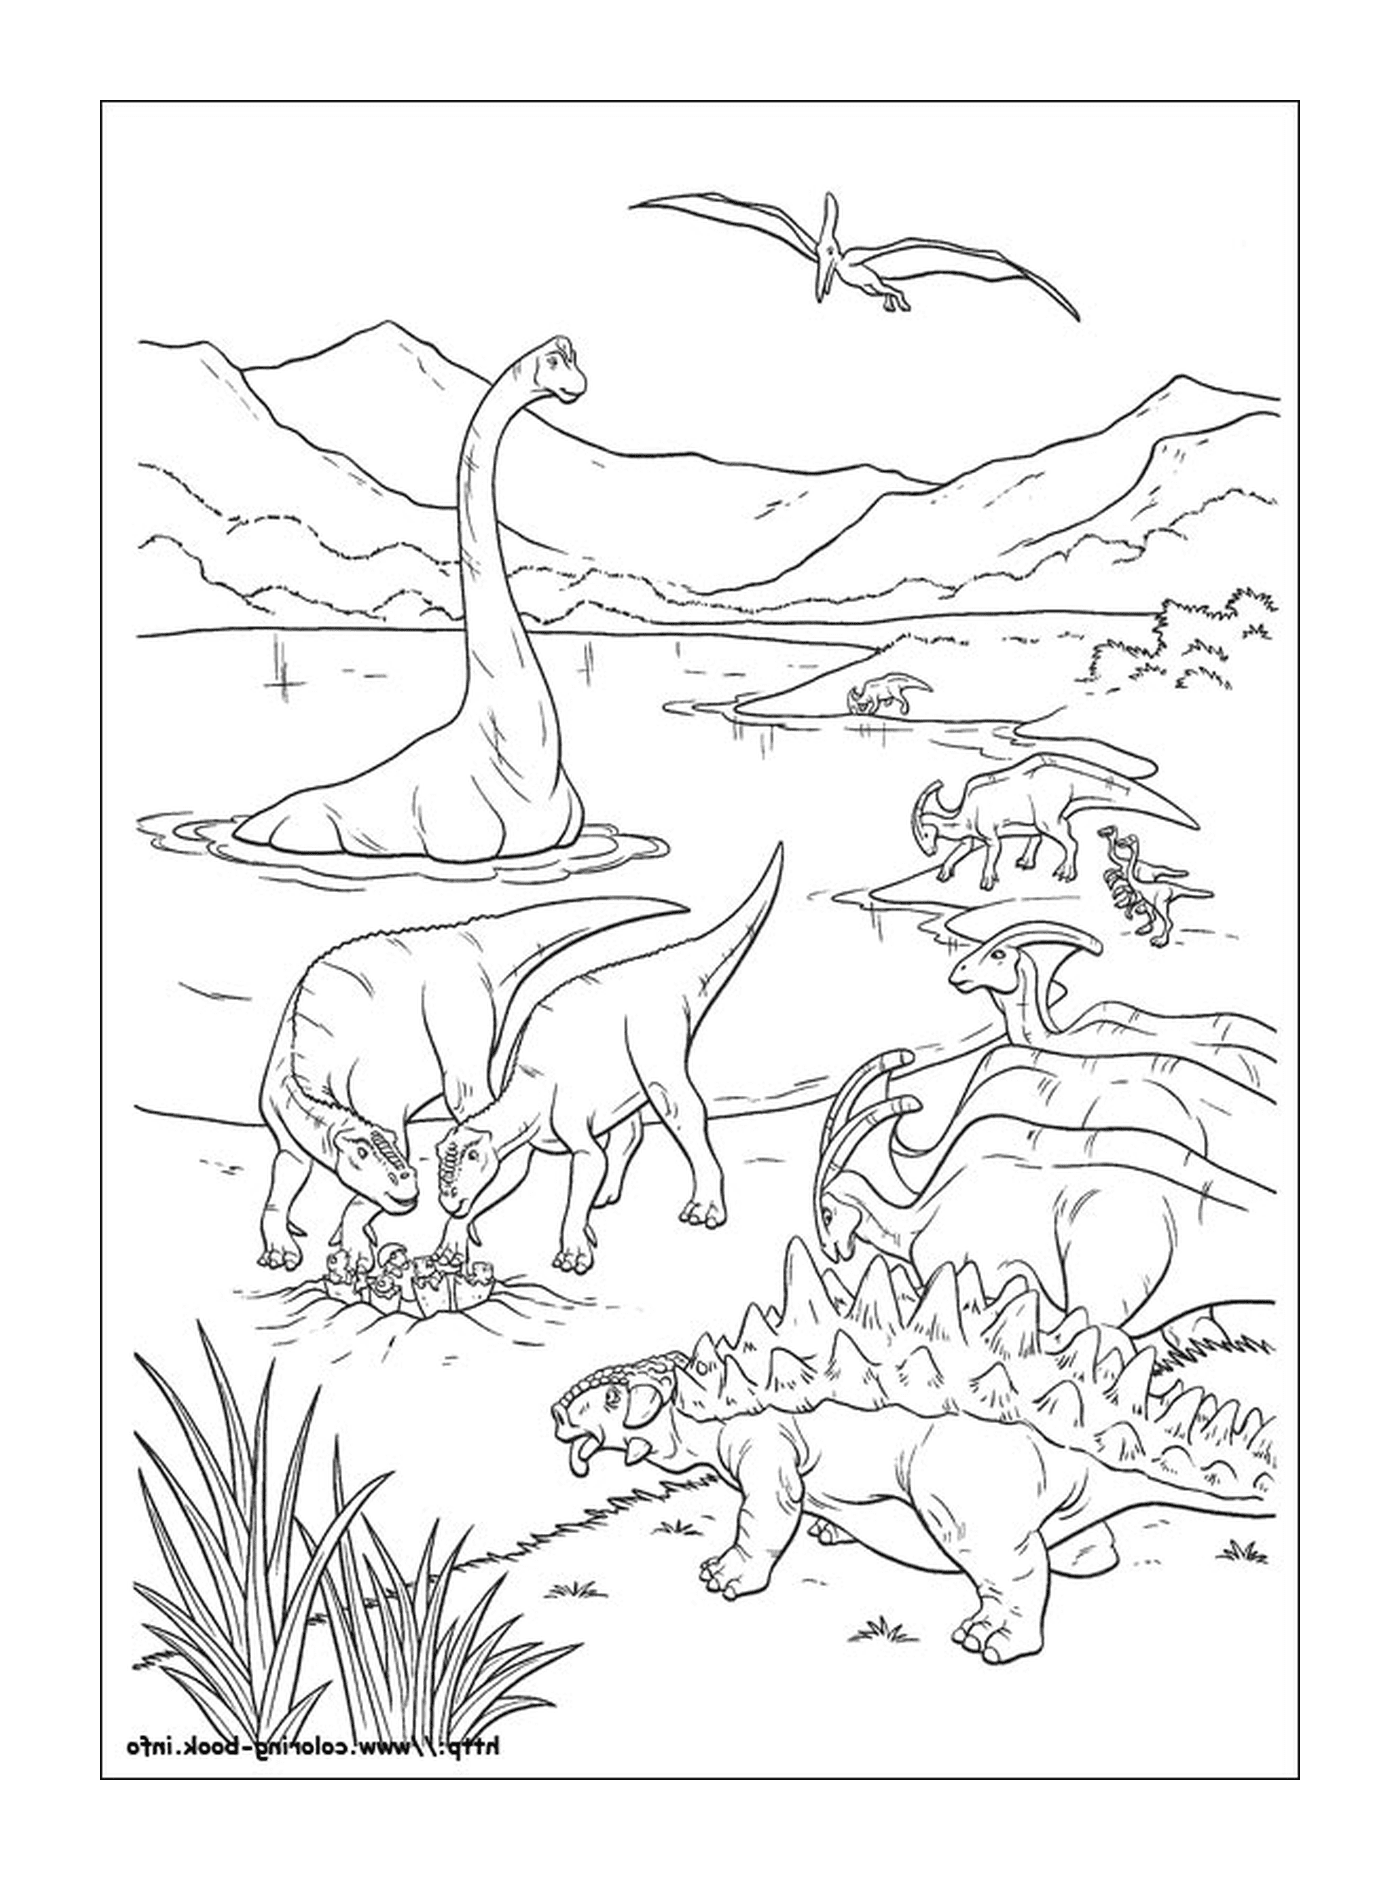  Un grupo de dinosaurios en el agua 